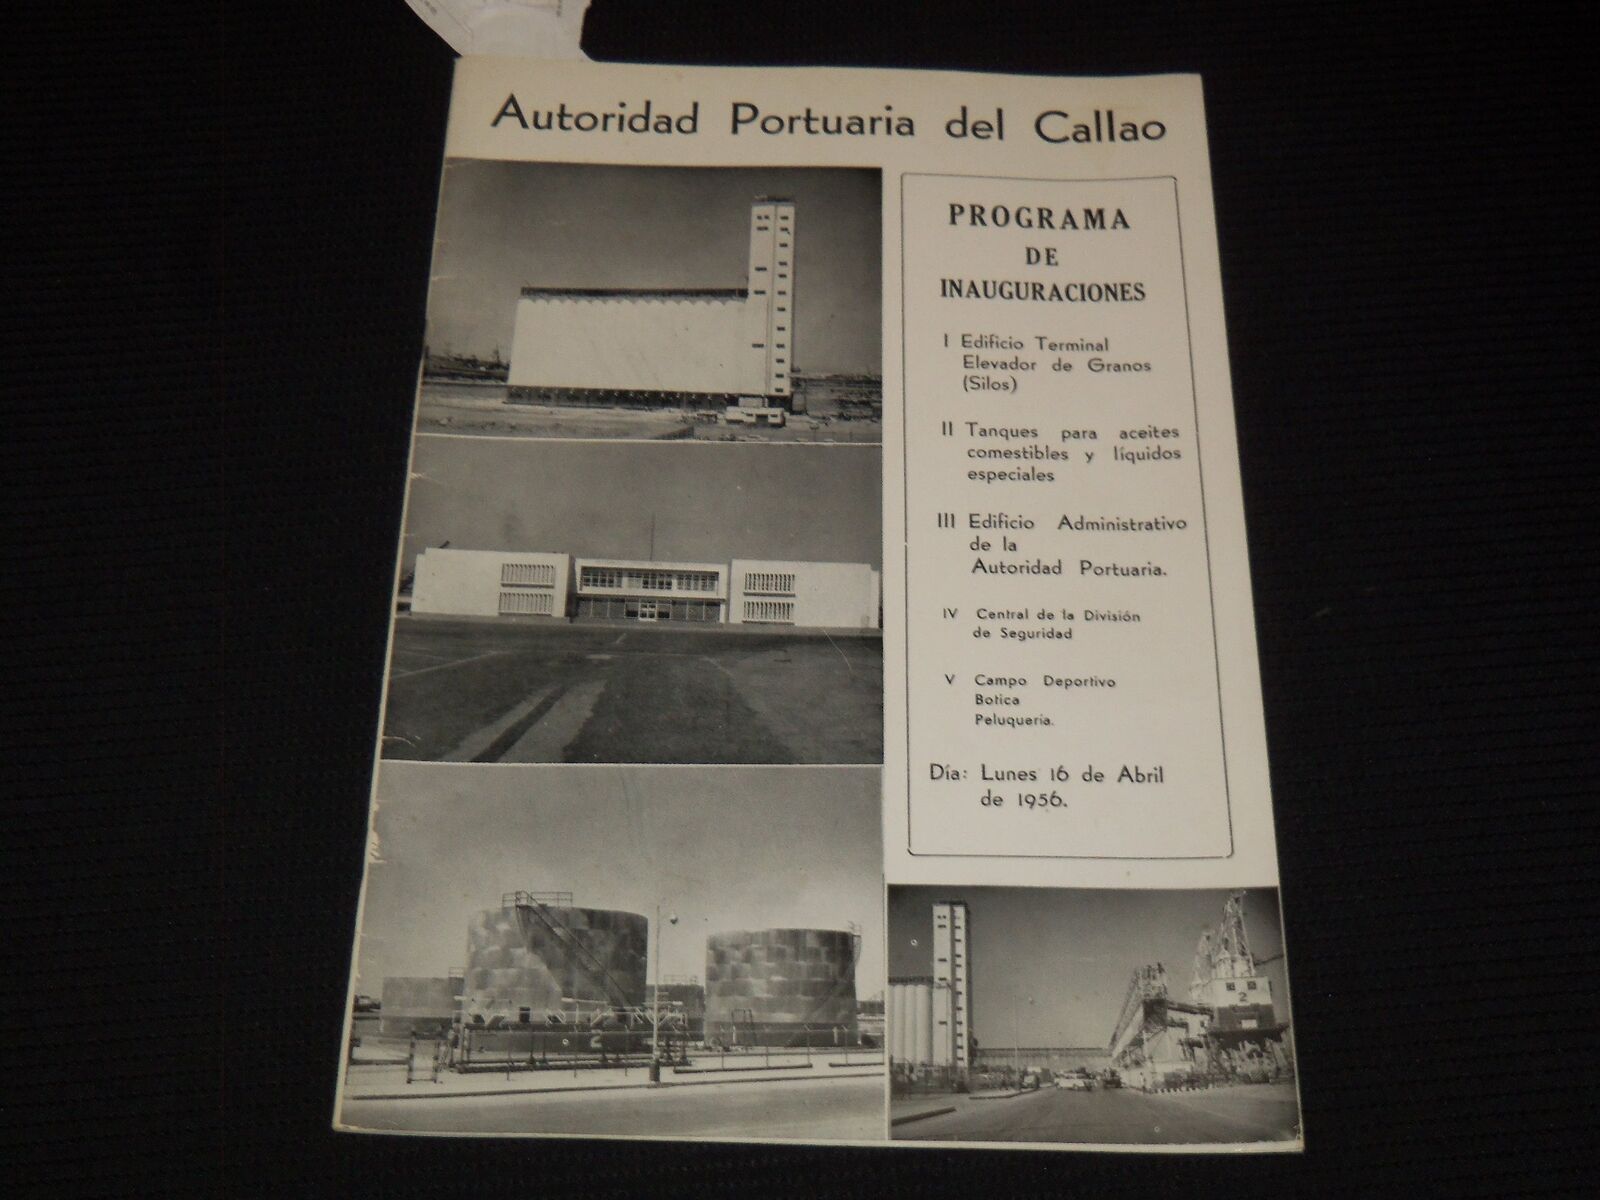 1956 APRIL 16 AUTORIDAD PORTUARIA DEL CALLAO INAUGURATION PROGRAM - SP 3136J